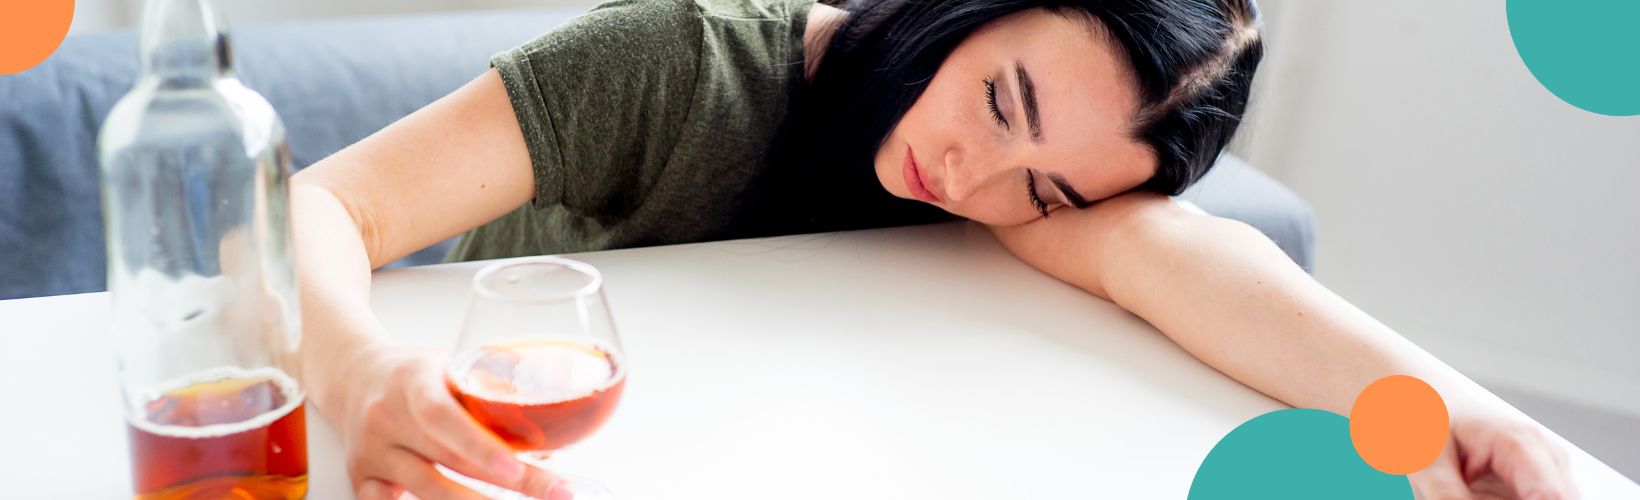 Jak alkohol wpływa na zdrowie psychiczne?